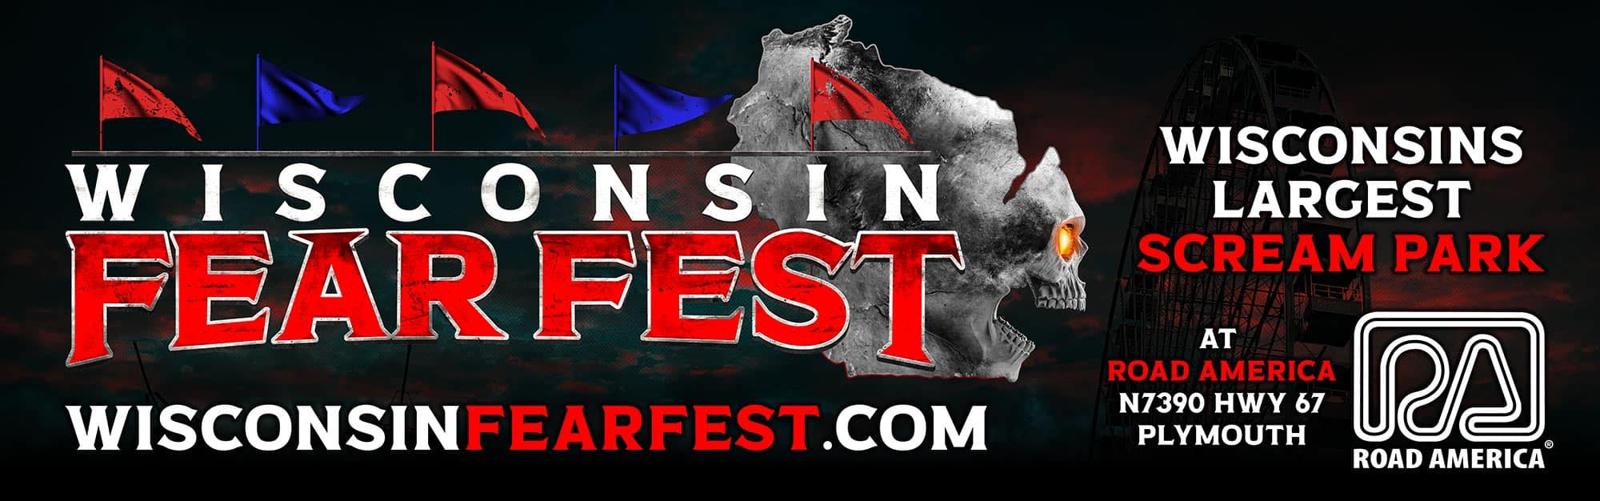 Wisconsin Fear Fest banner